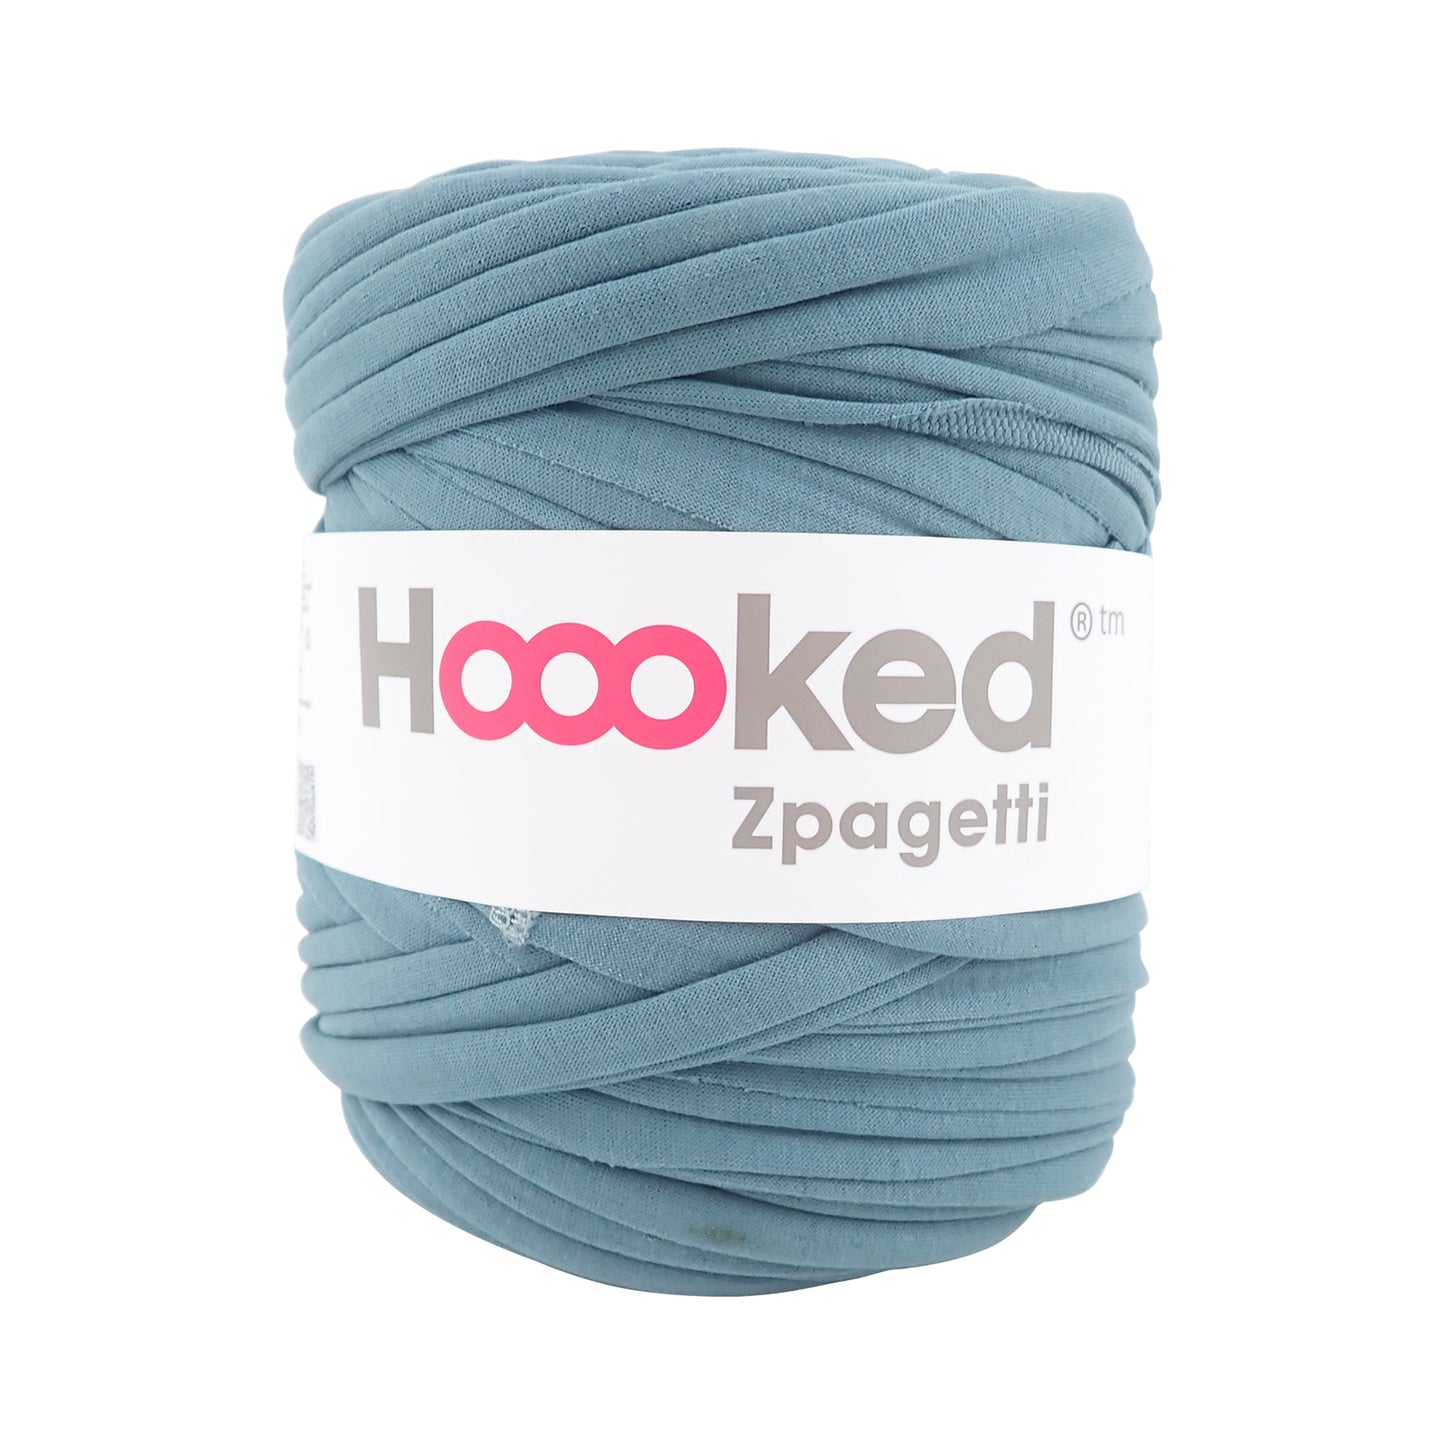 Hoooked Zpagetti Sage Cotton T-Shirt Yarn - 120M 700g